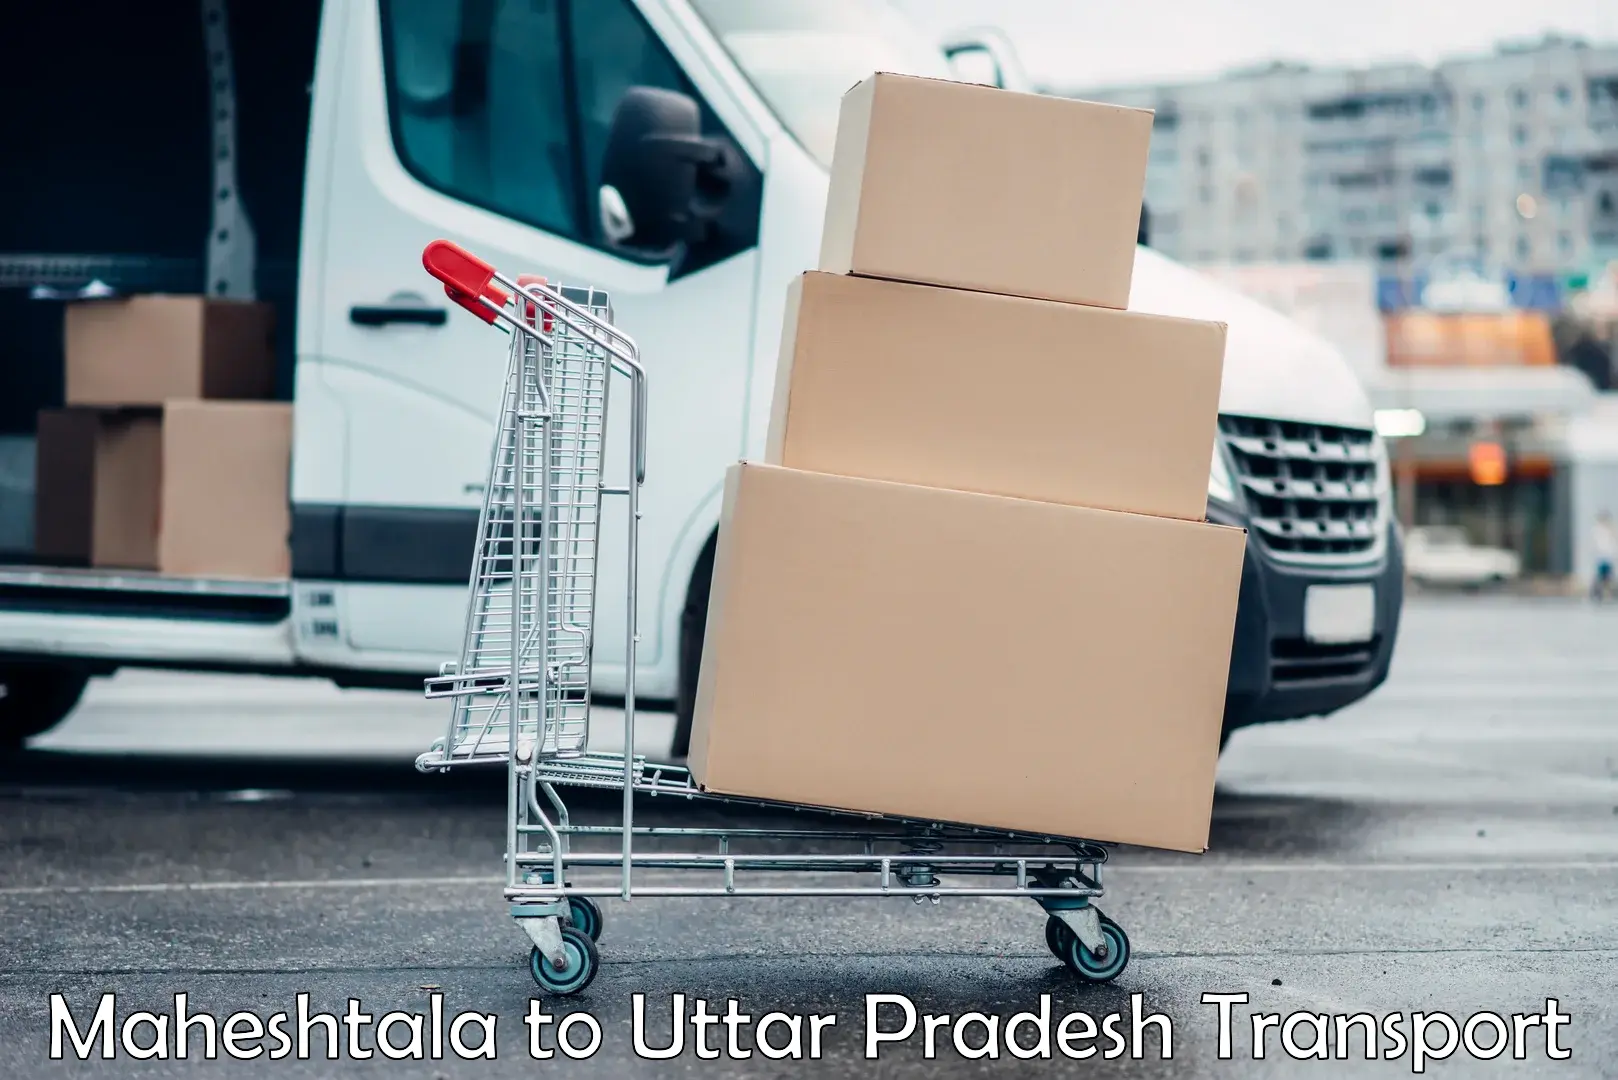 Daily parcel service transport Maheshtala to Sonbhadra